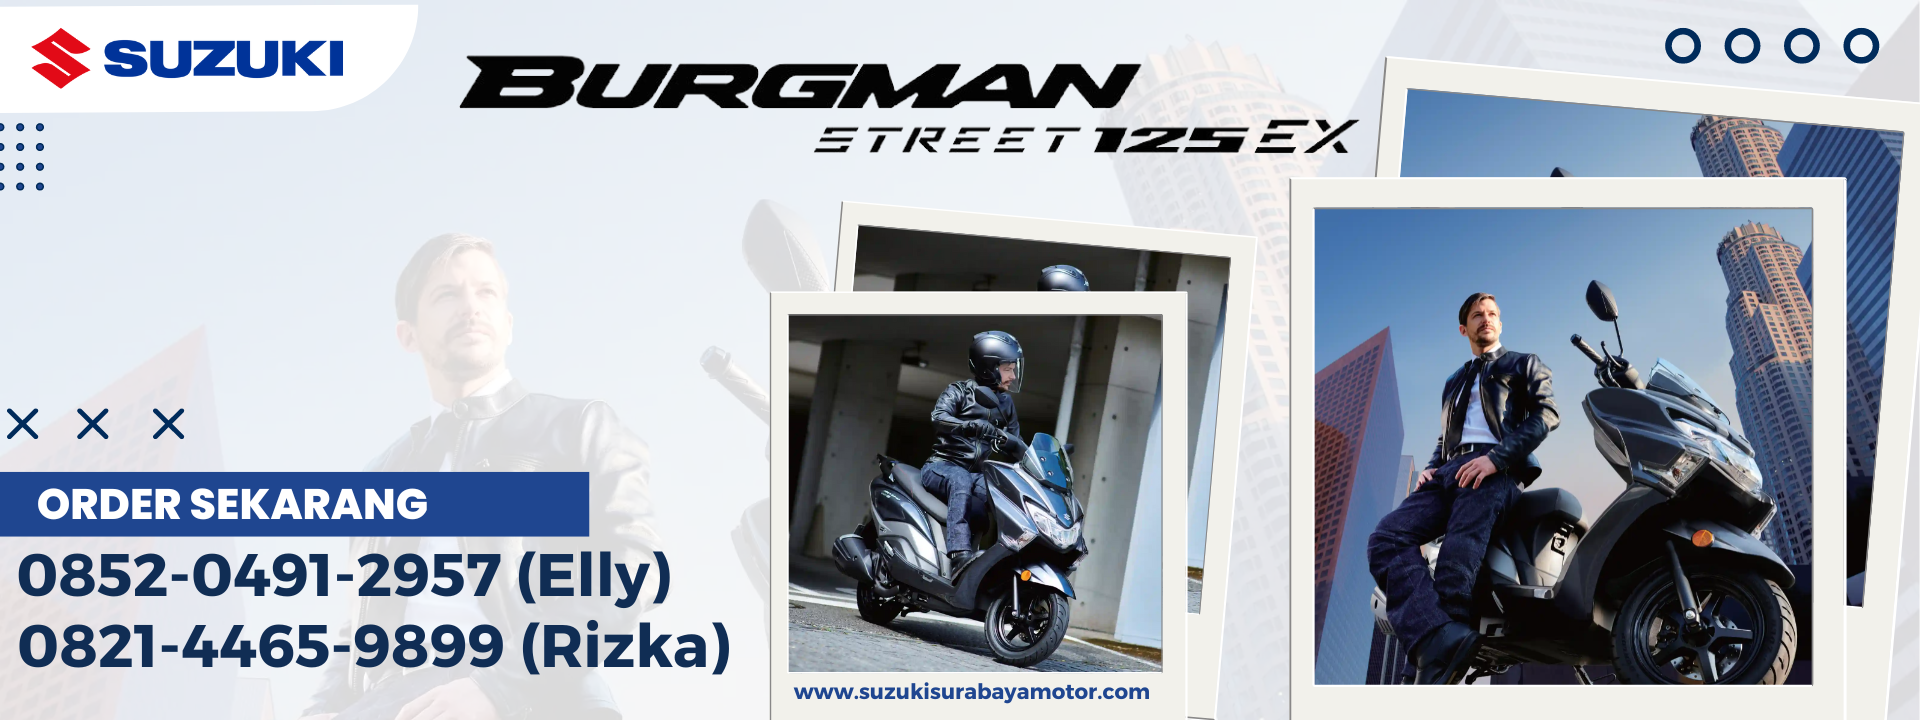 Banner Web Suzuki Surabaya Burgman